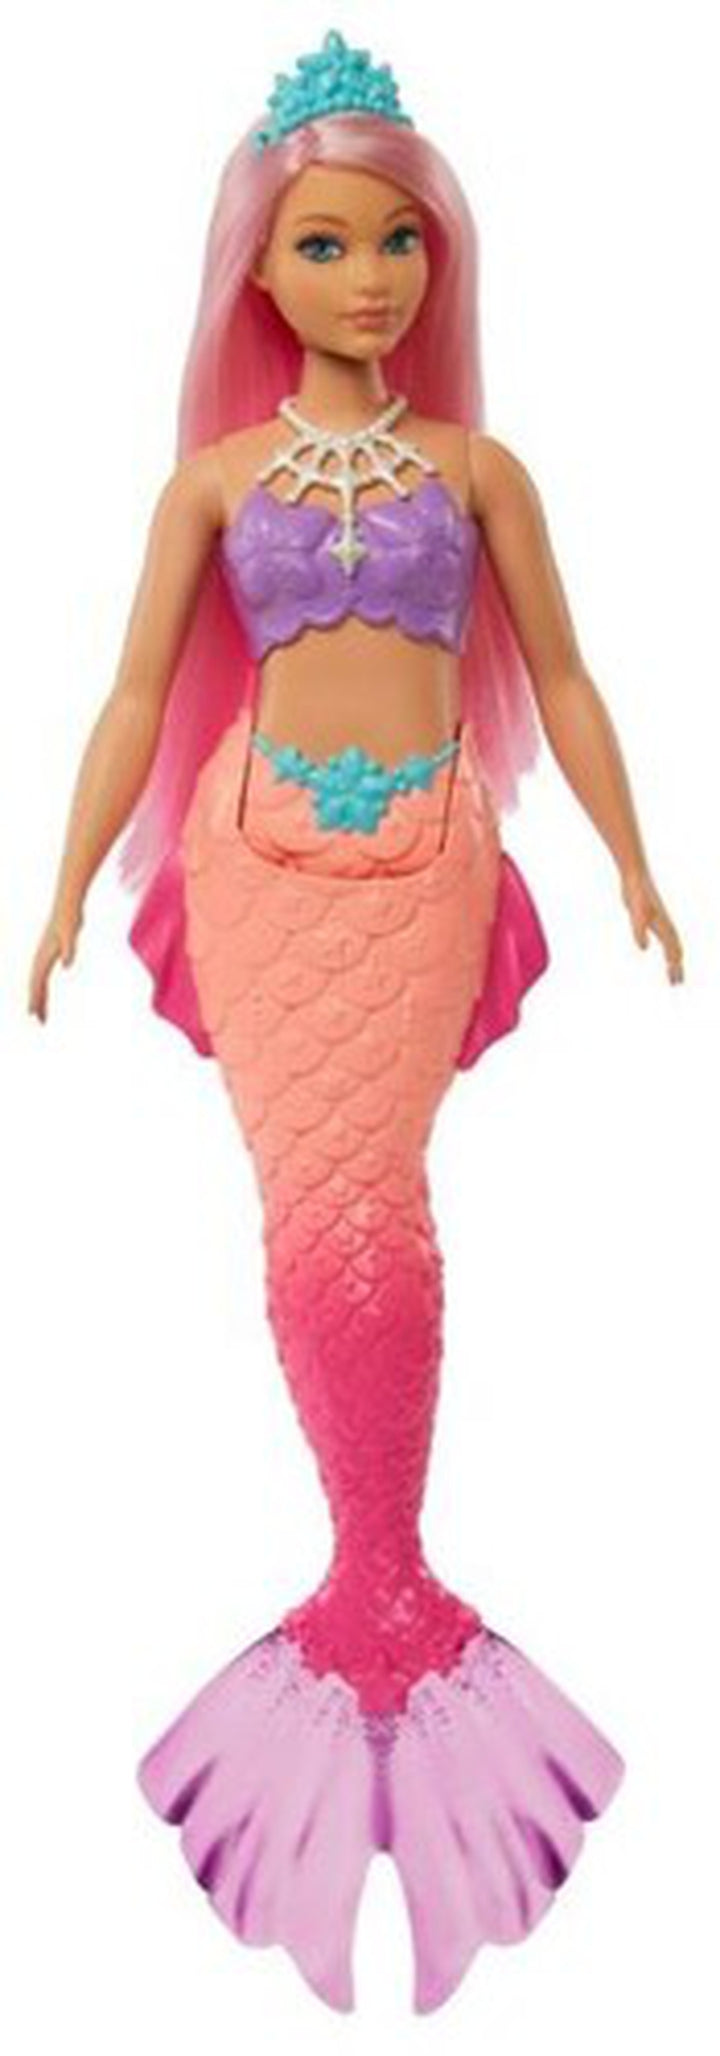 Mattel - Barbie Dreamtopia Mermaid with Purple Top, Pink Hair